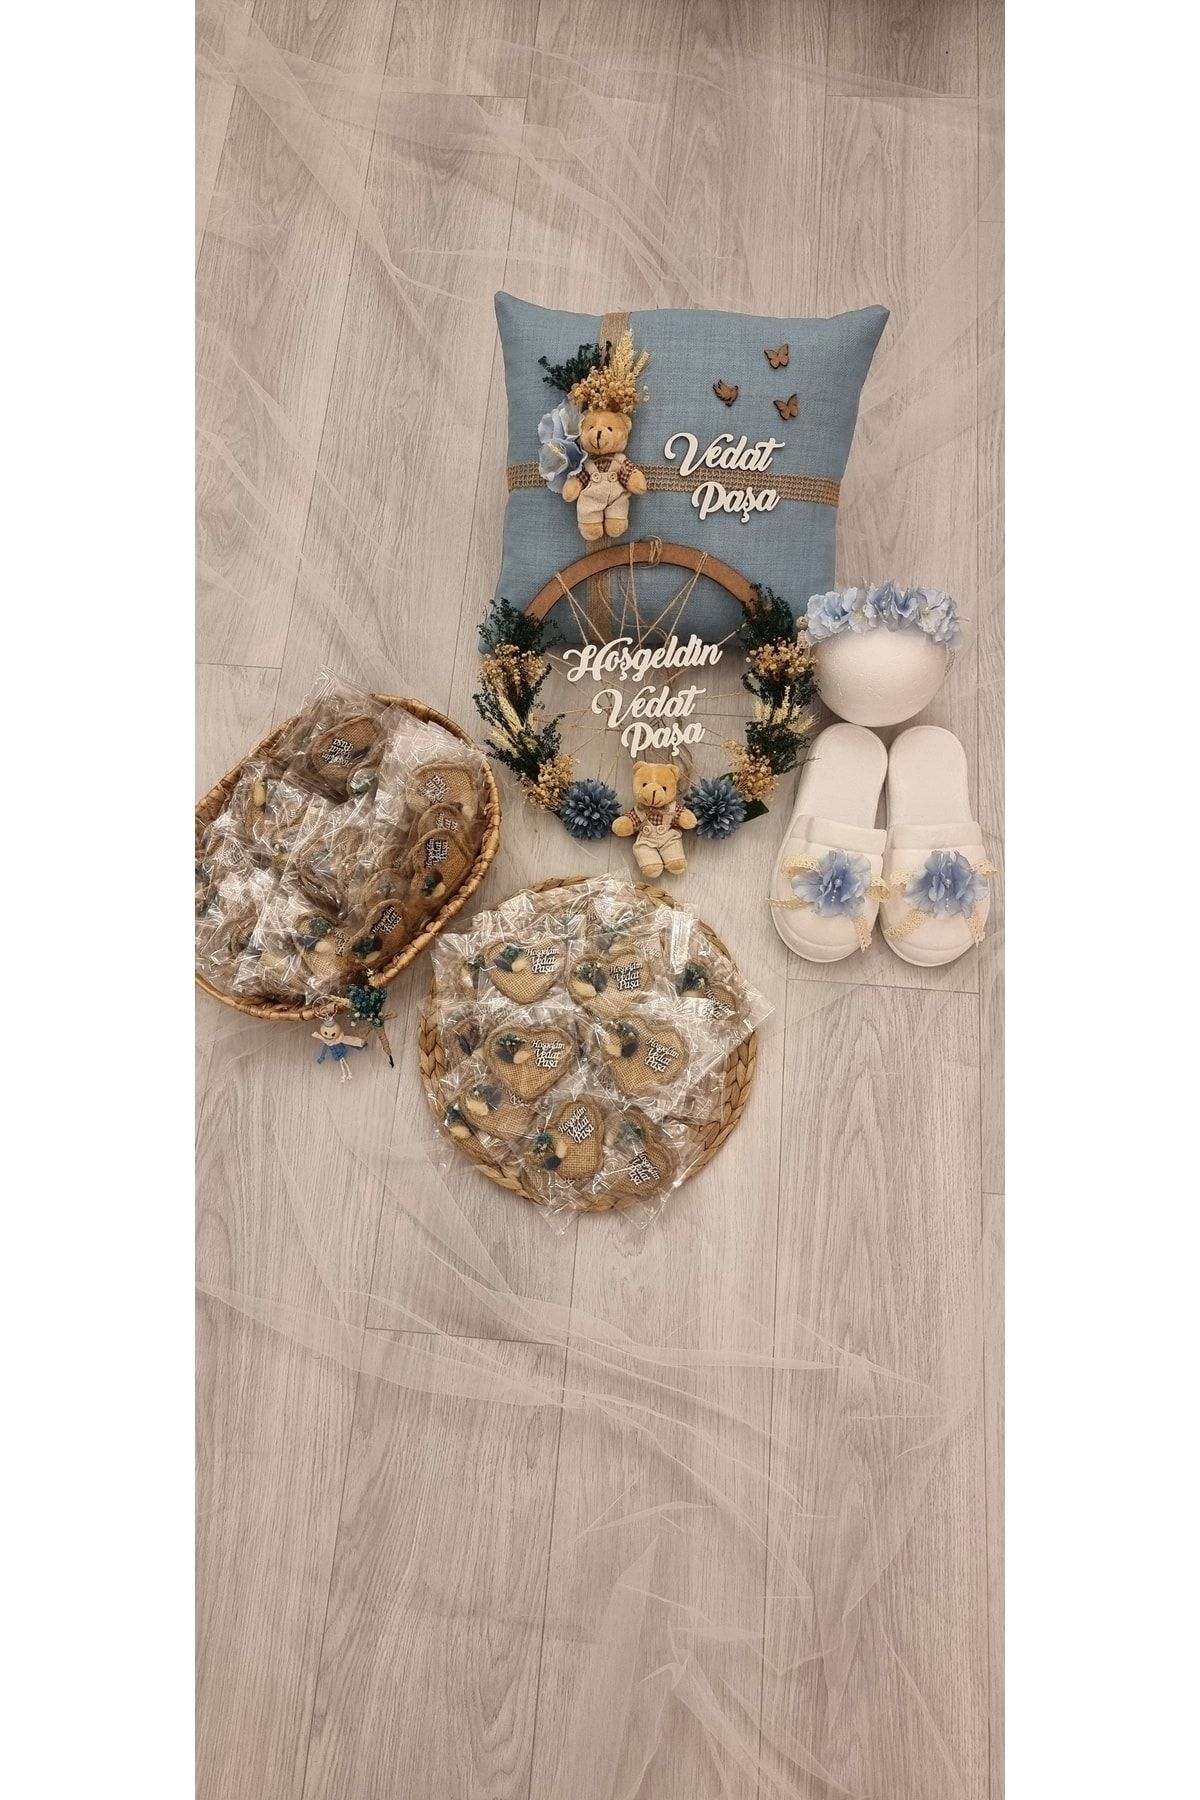 ALMİRA BABY DESİGN BY YASEMİN US Mavi Çiçek Süslemeli Ayıcıklı Takı Yastığı,ahşap Kapı Süsü,lohusa Taç Seti Ve 20 Adet Kalpli Magnet